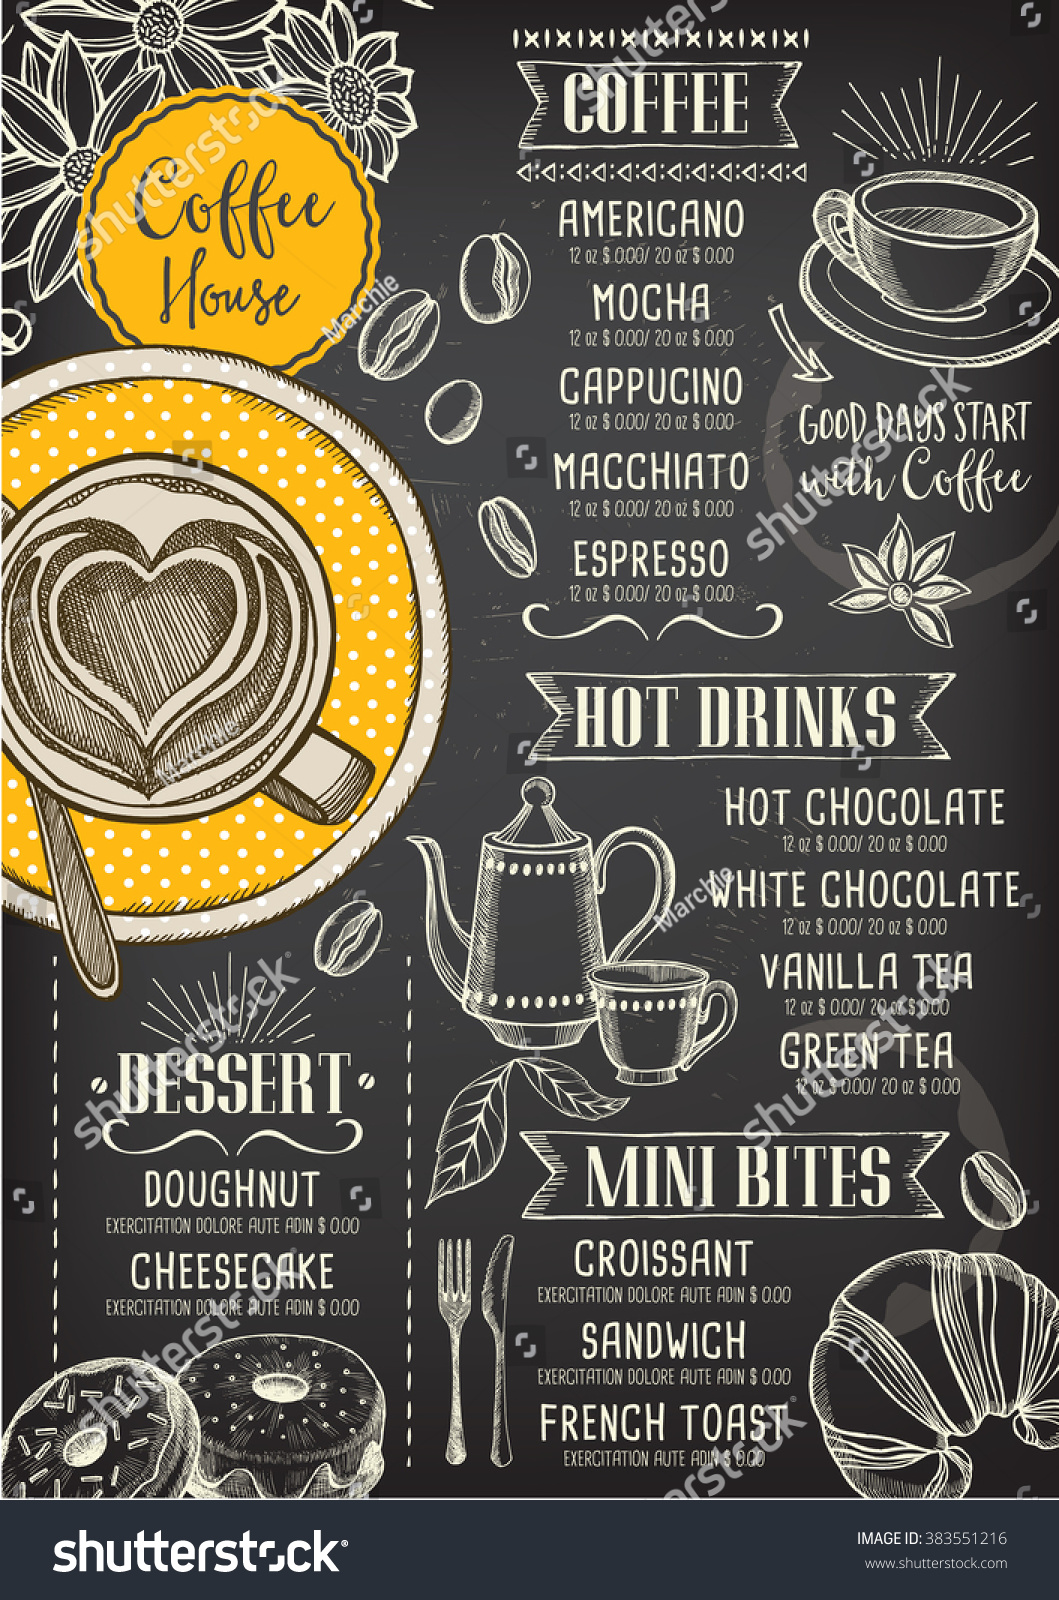 Coffee Restaurant Brochure Vector, Coffee Shop Menu Design. Vector Cafe ...